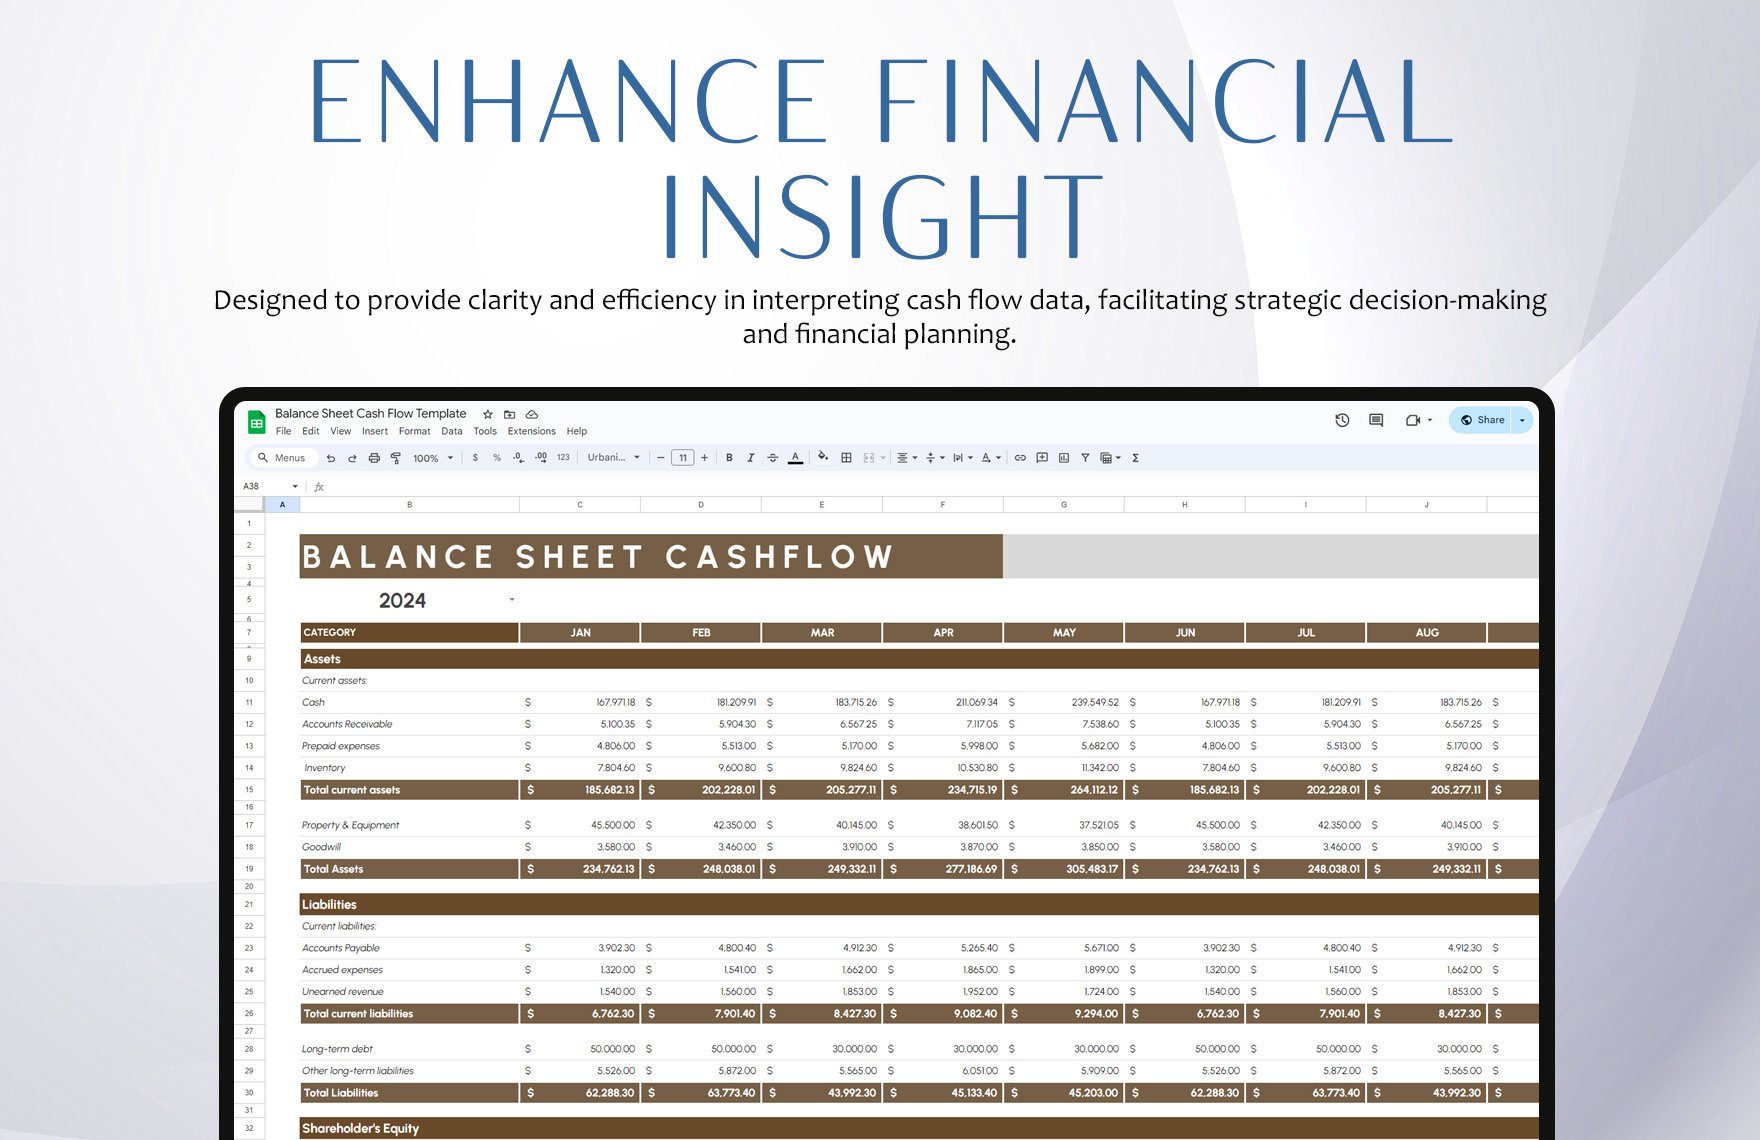 Balance Sheet Cash Flow Template